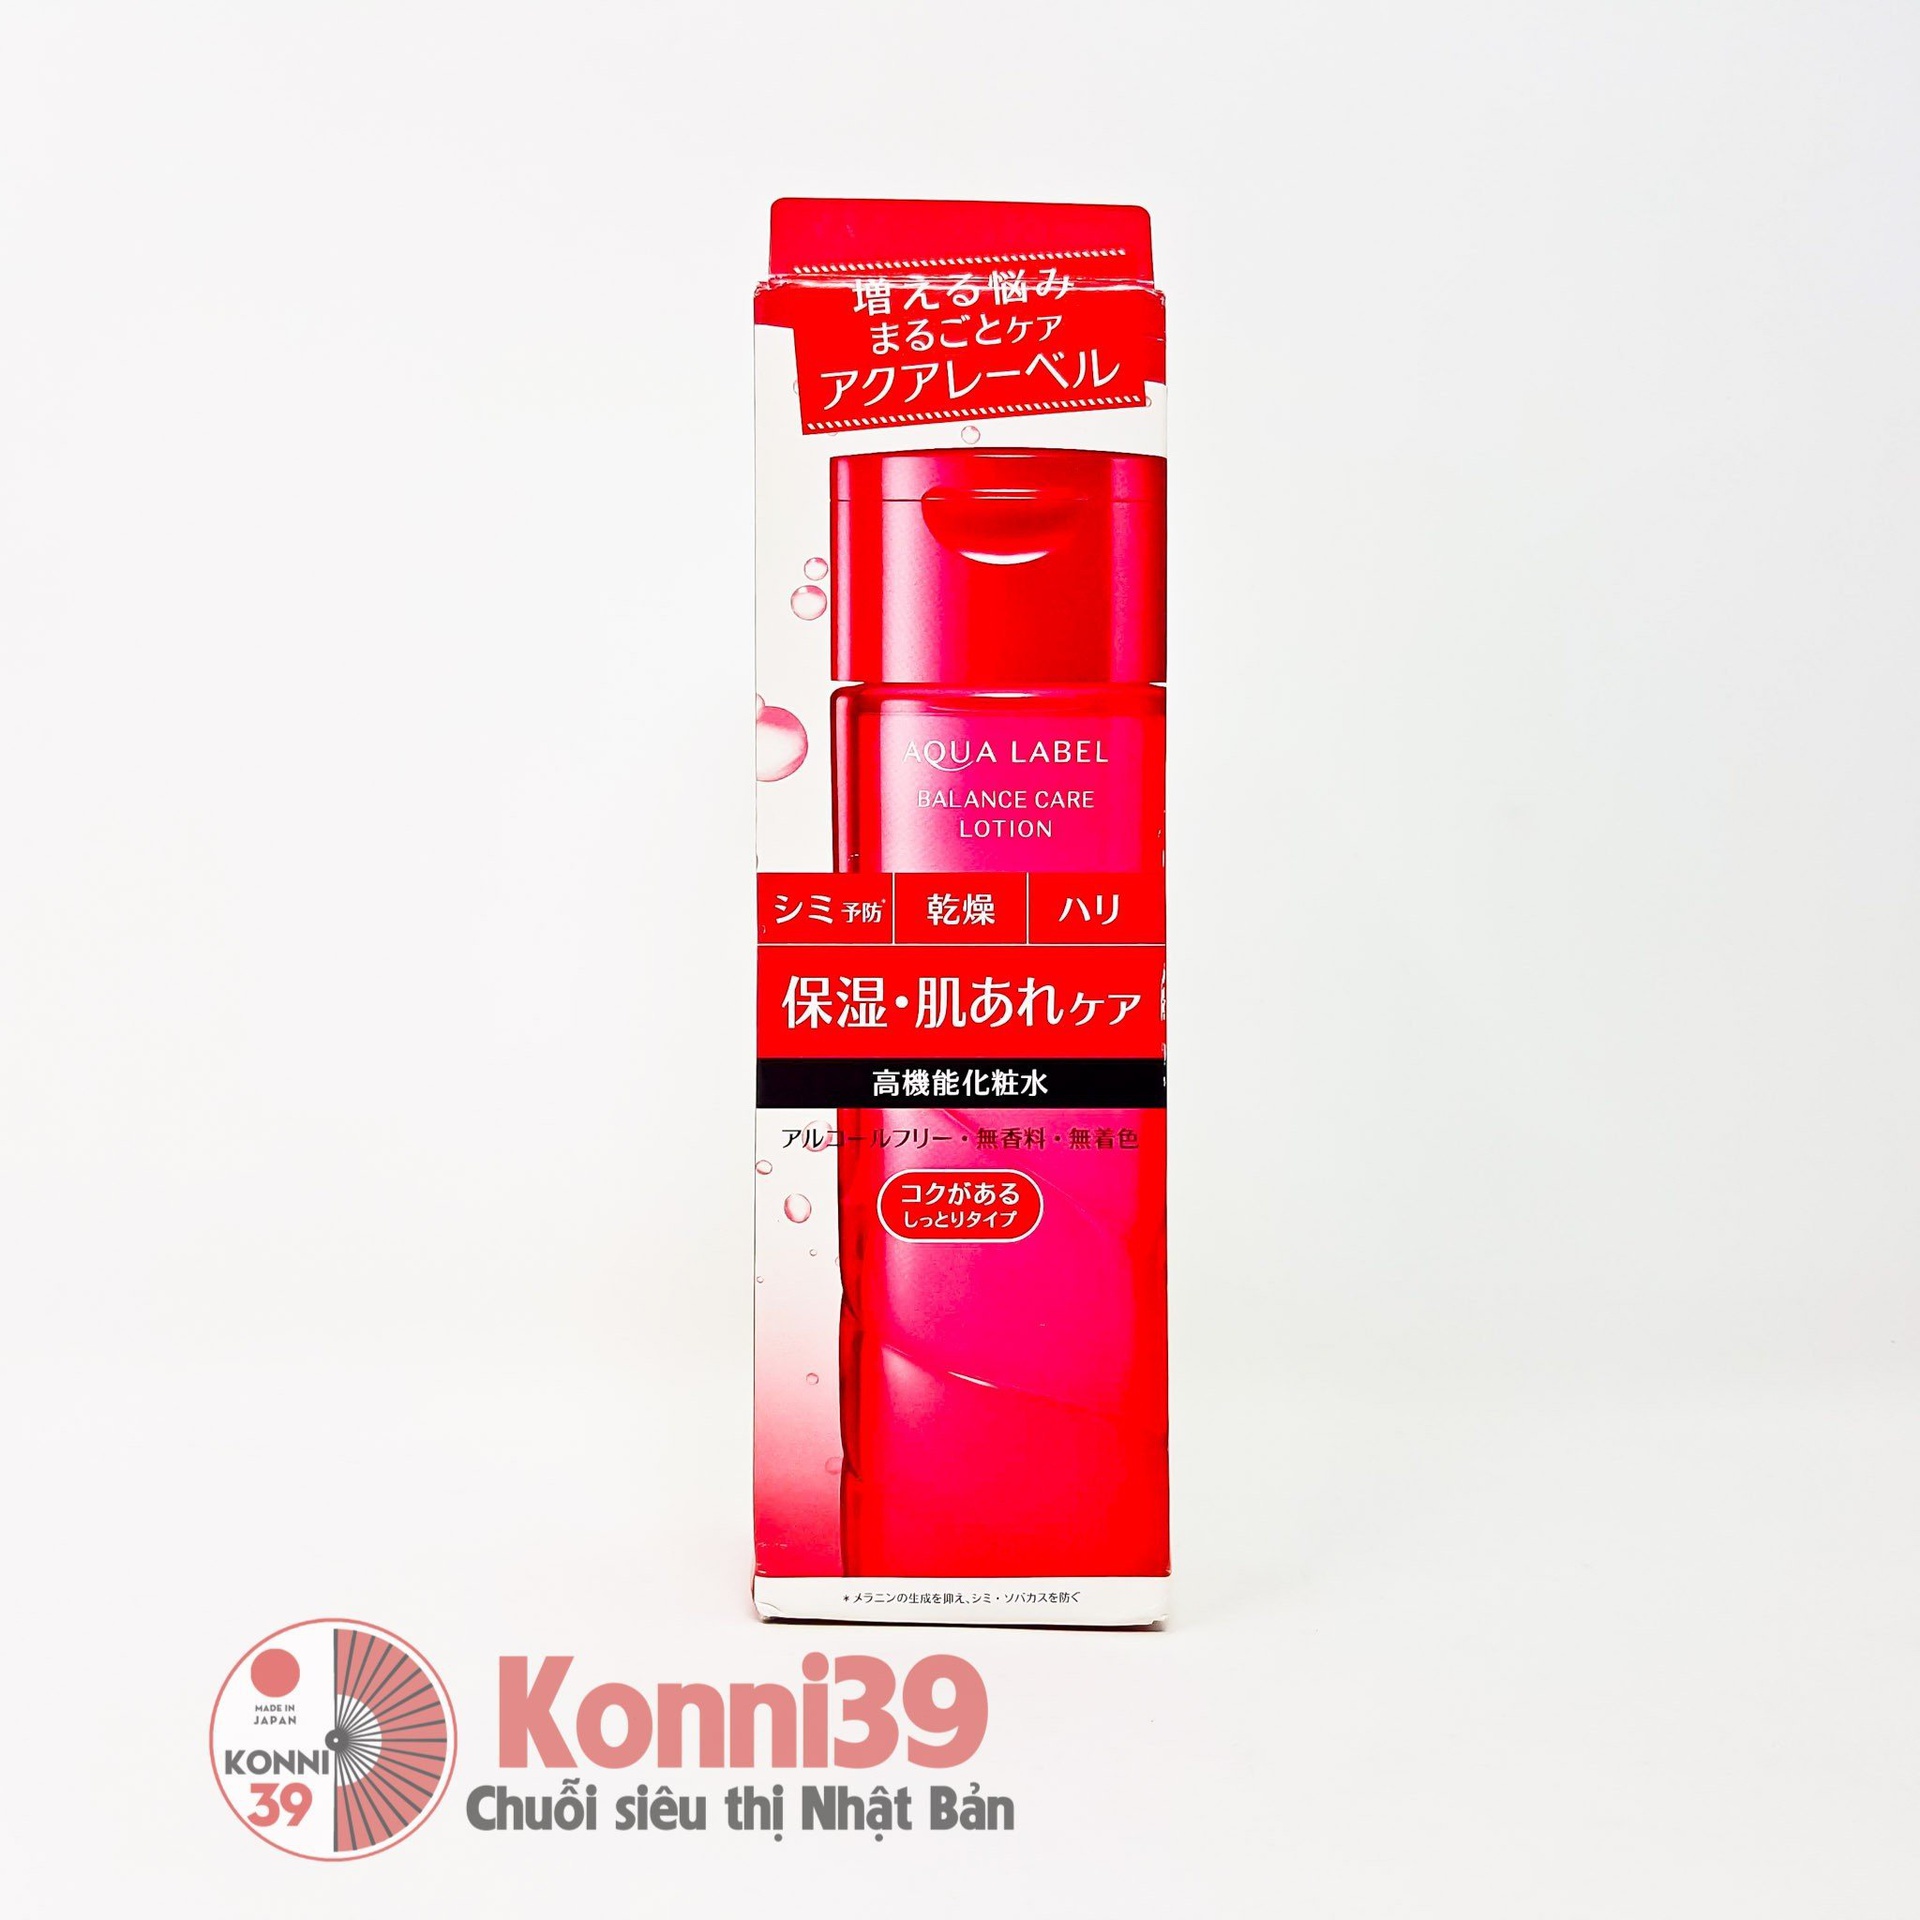 Nước hoa hồng Shiseido Aqua Label dưỡng ẩm trẻ hóa làn da 200ml - Cân bằng da